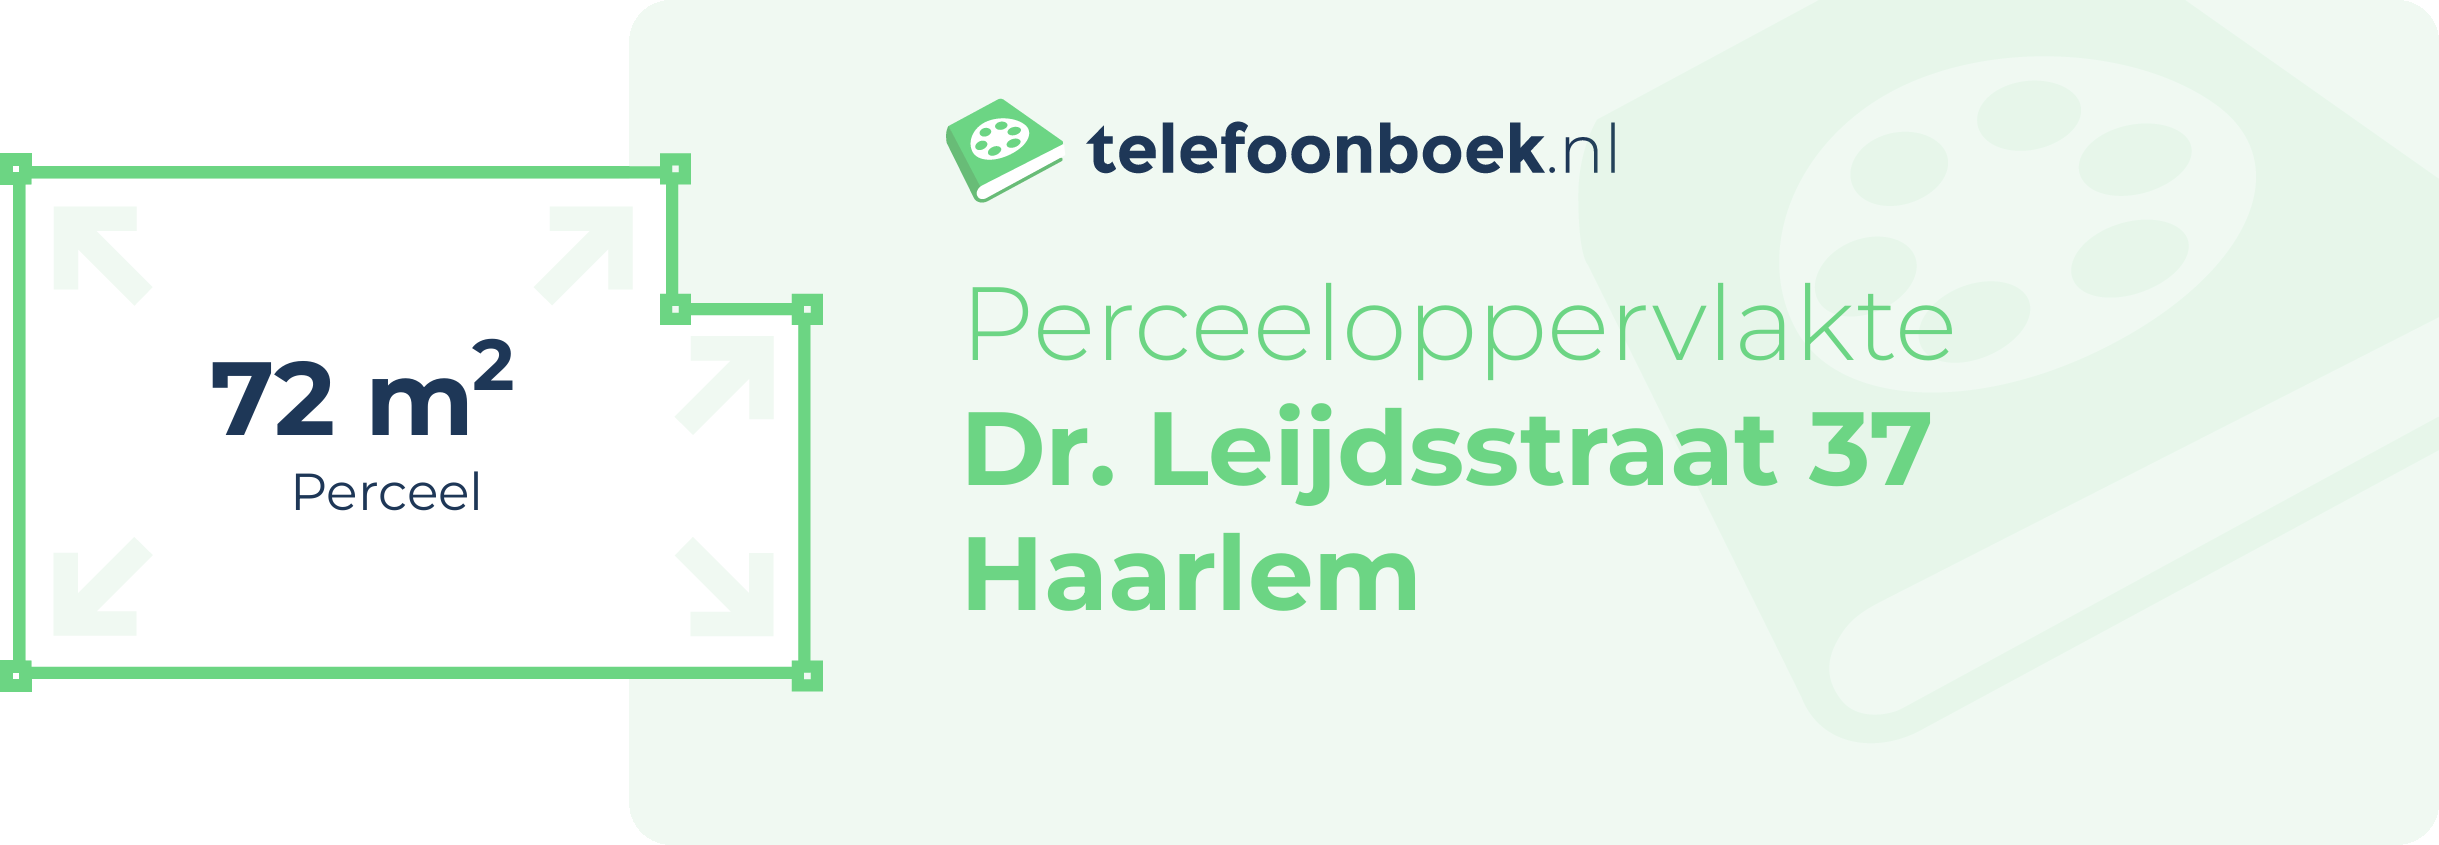 Perceeloppervlakte Dr. Leijdsstraat 37 Haarlem